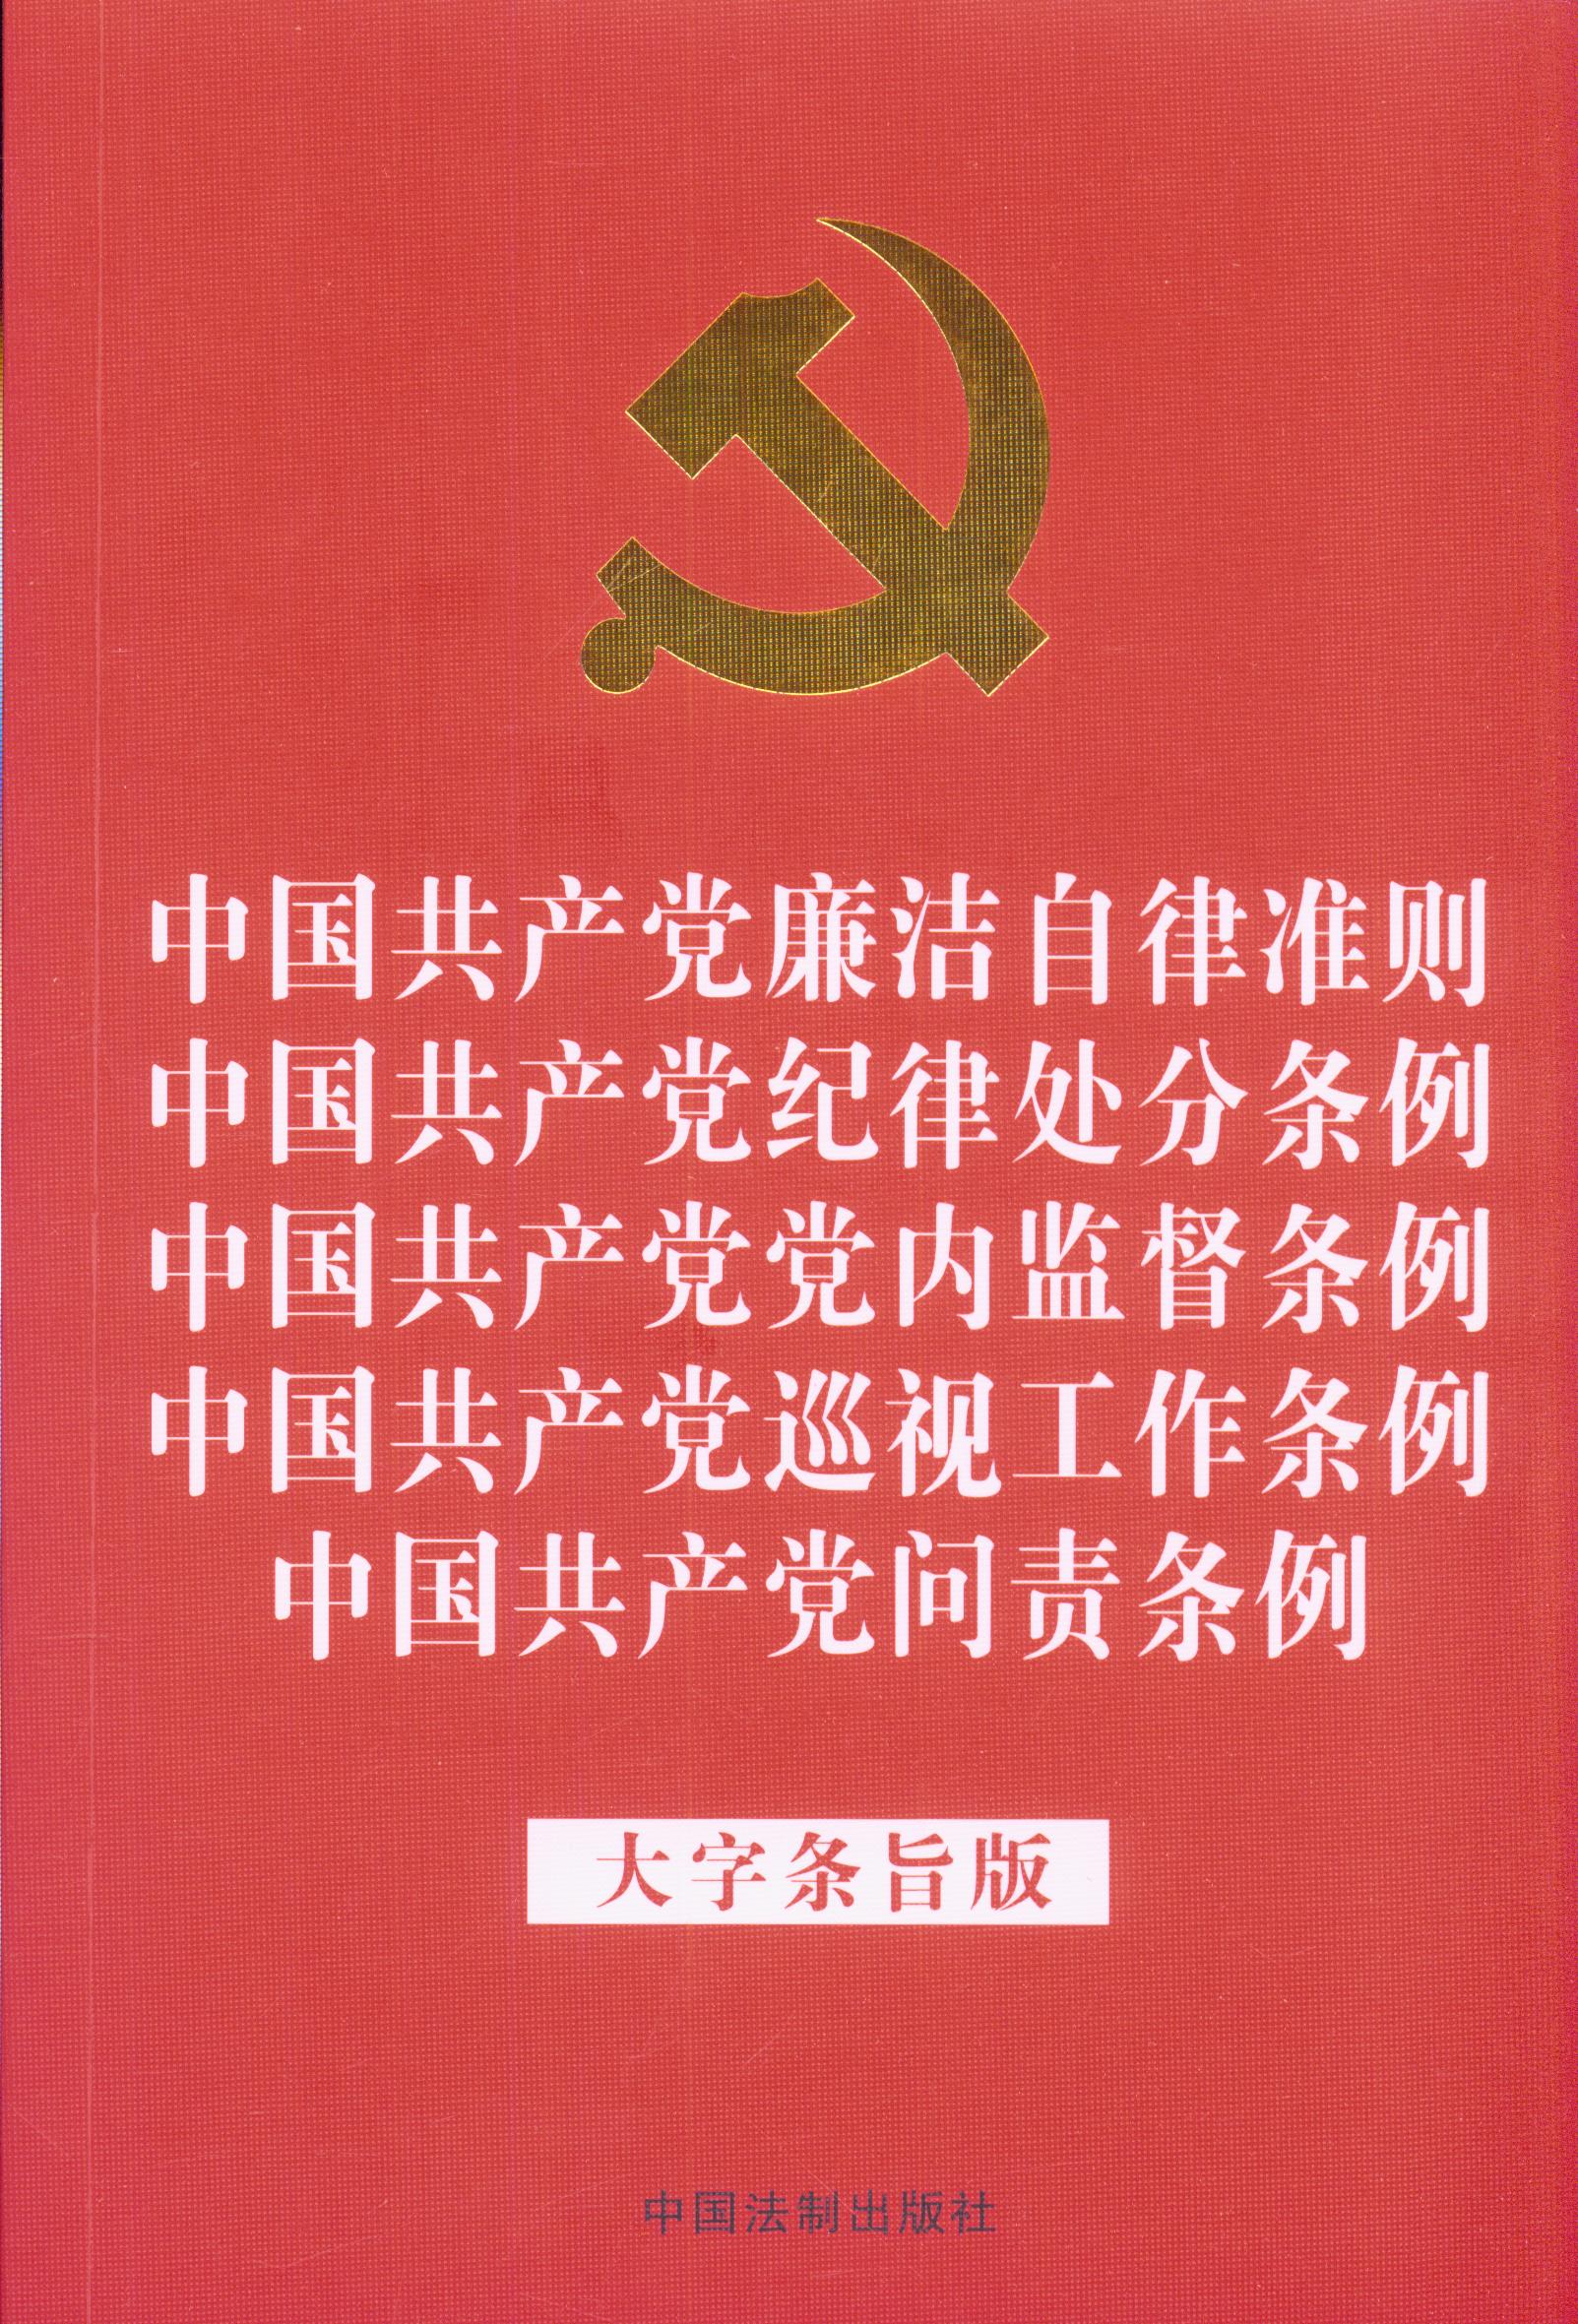 【2018年新版】【32开红皮烫金版】中国共产党廉洁自律准则